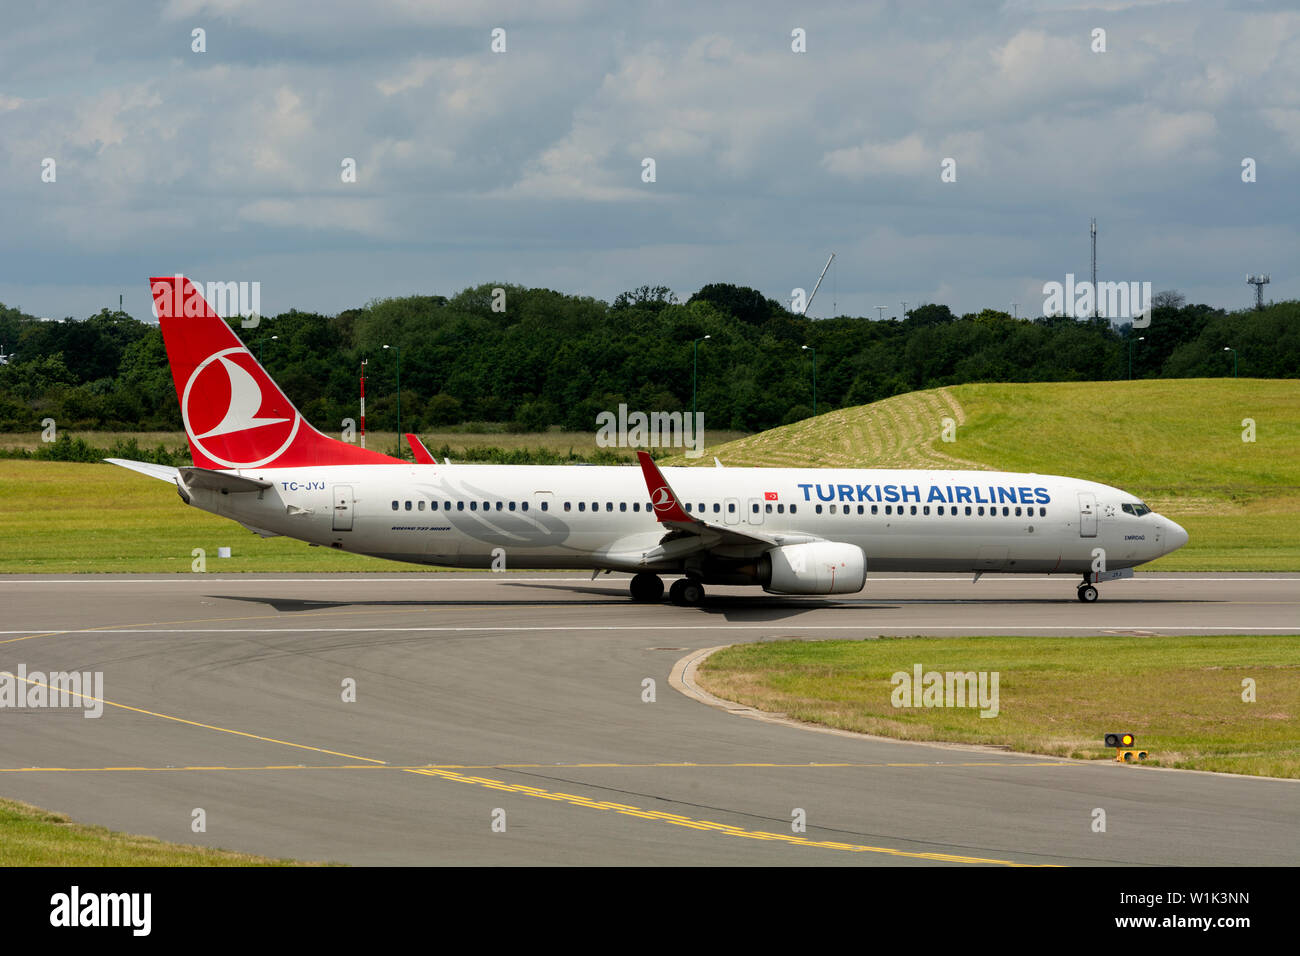 Turkish Airlines Boeing 737-9F2 prêt au décollage à l'aéroport de Birmingham, UK (TC-JYJ) Banque D'Images